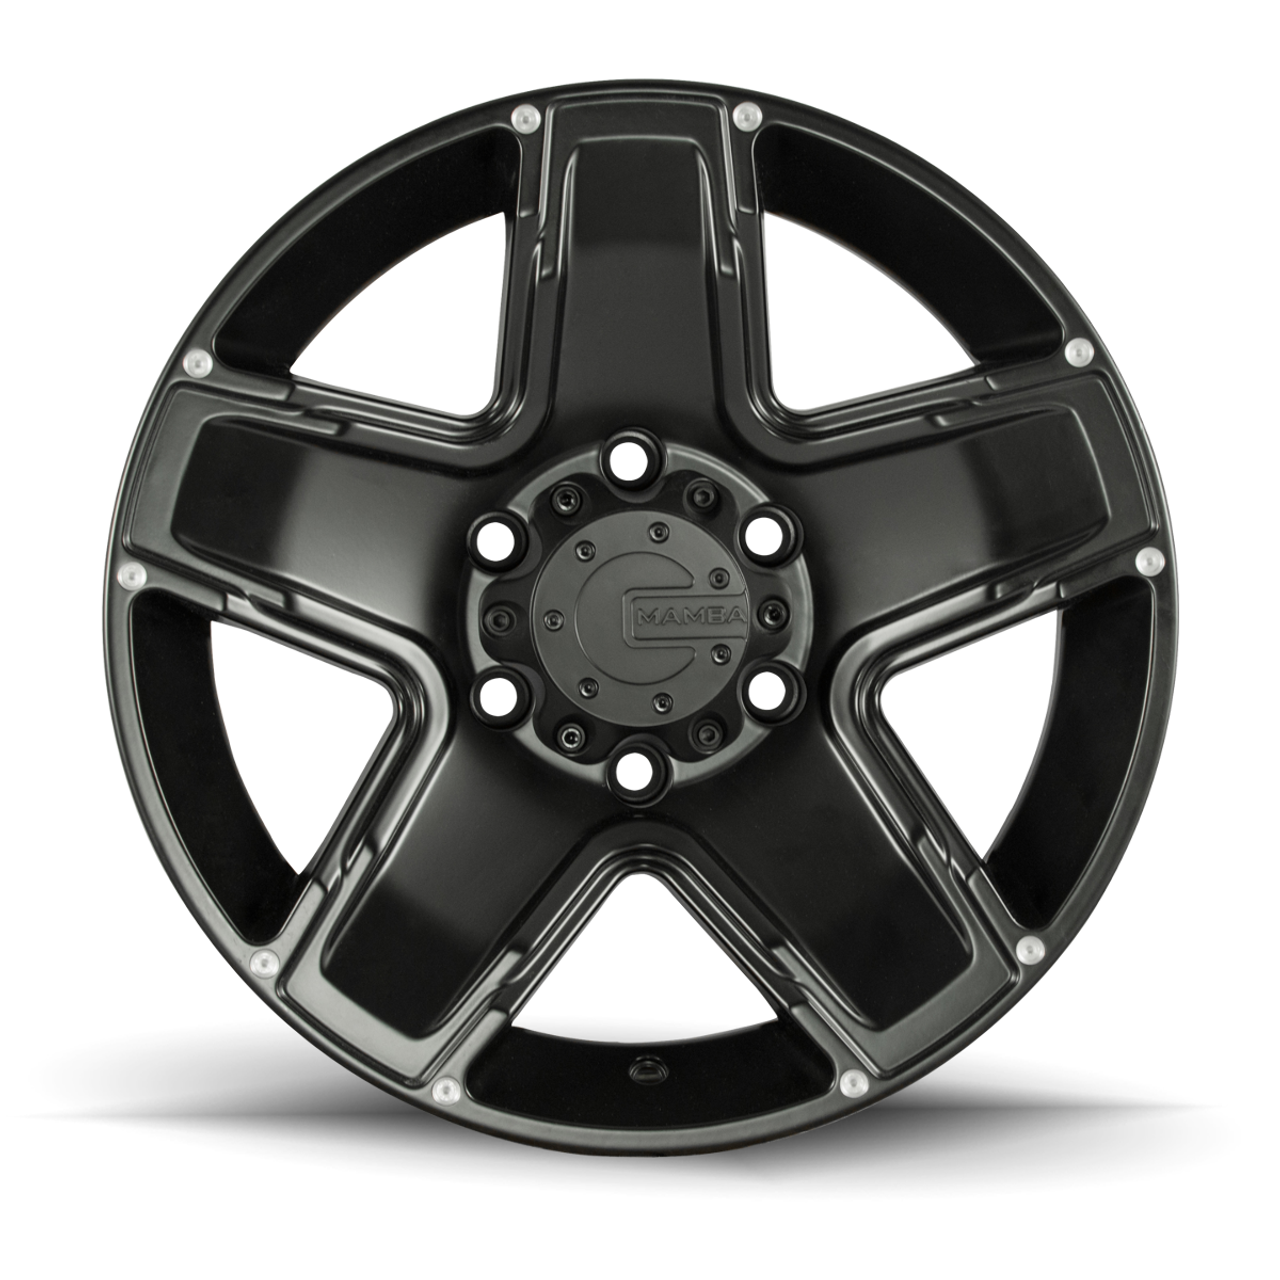 20" Mamba 585B M13 20x9 Matte Black 6x5.5 Wheel 12mm For Chevy GMC Cadillac Rim